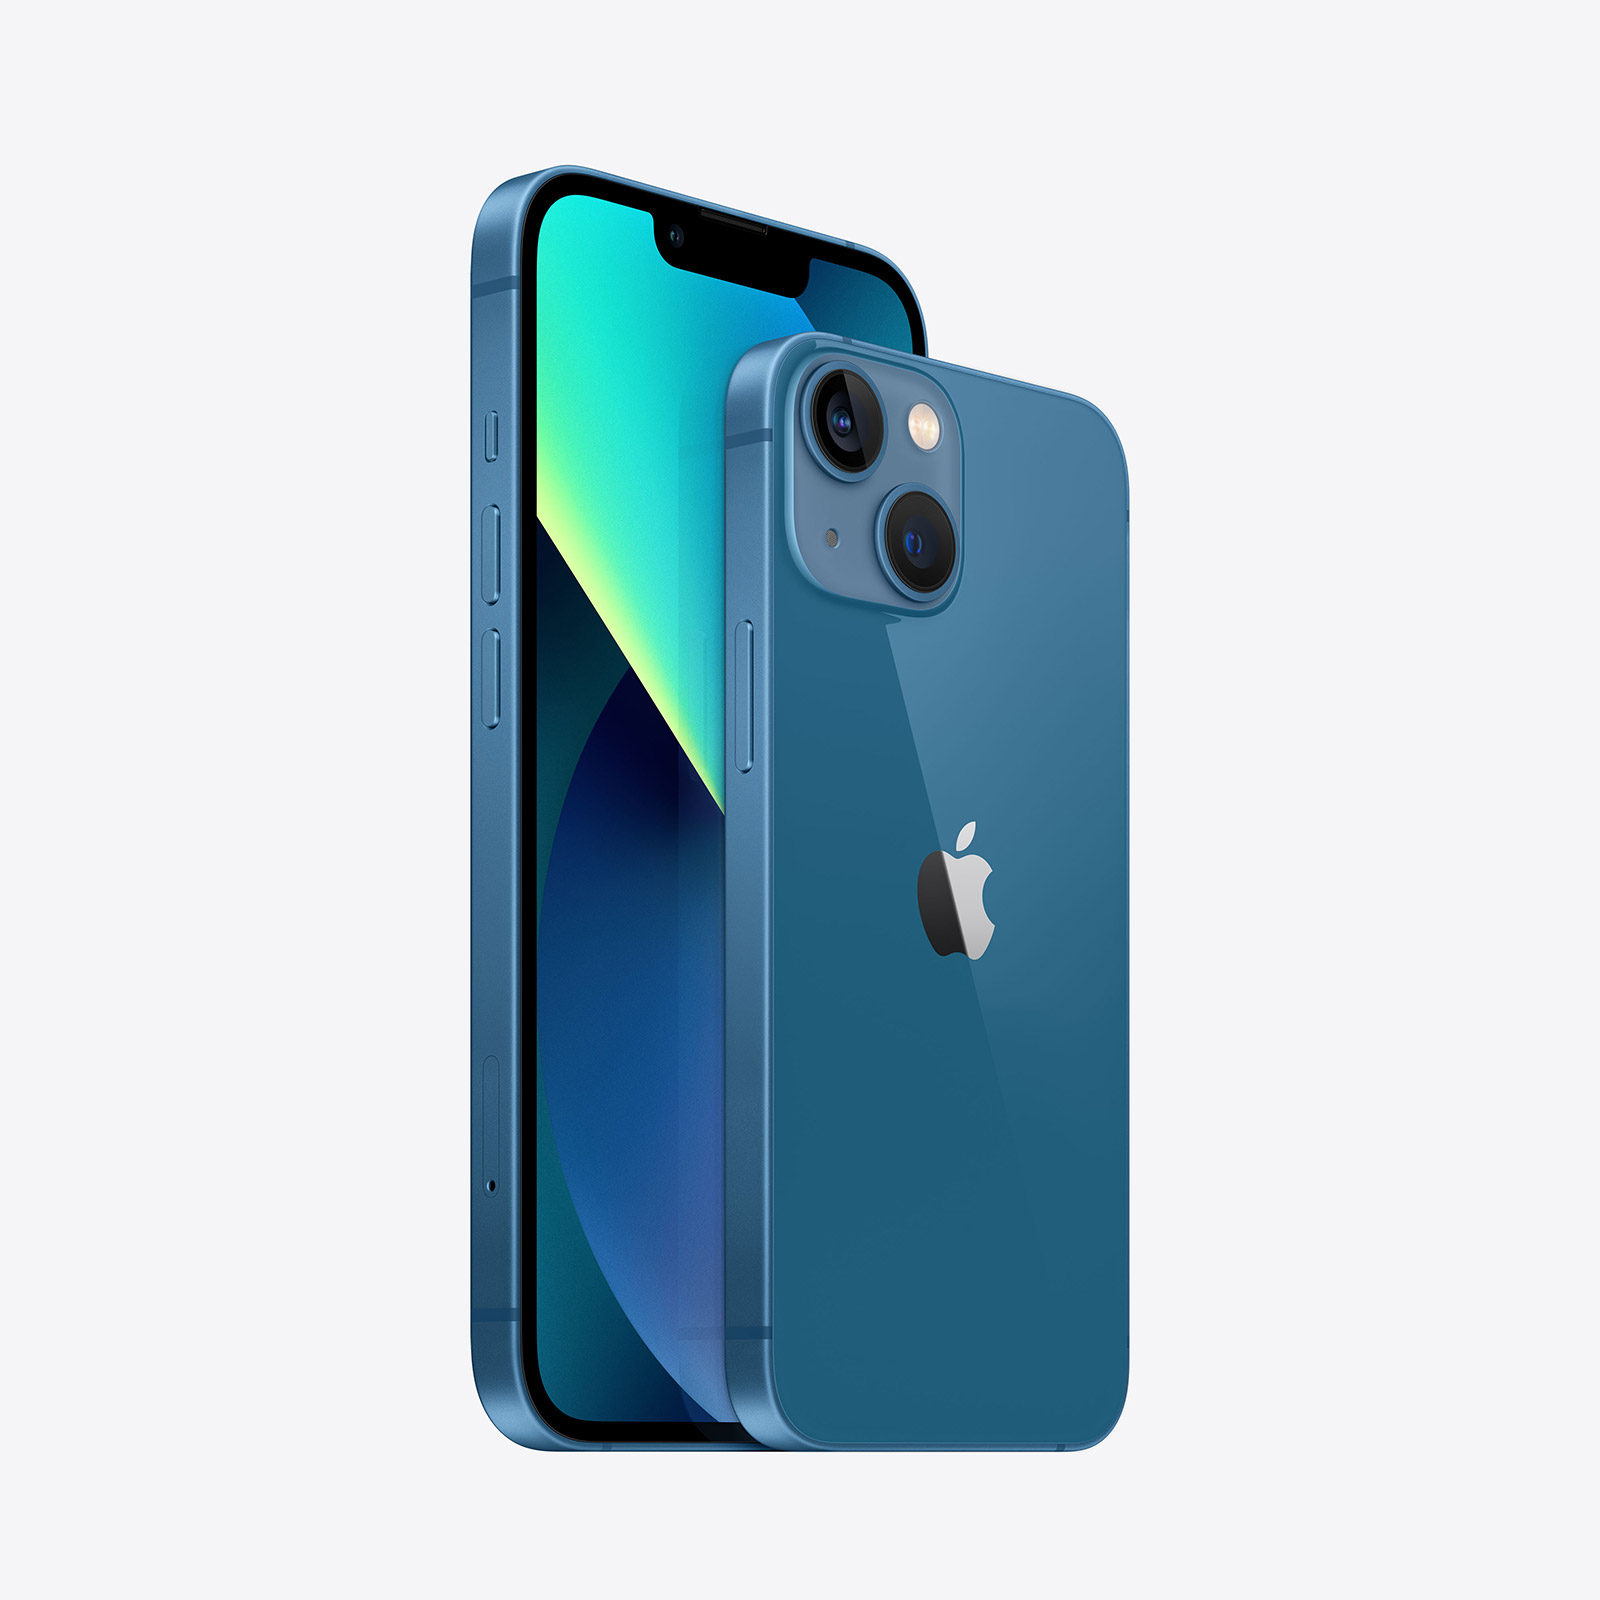 Apple-iPhone-13-mini-512-GB-Blau-2021-02.jpg